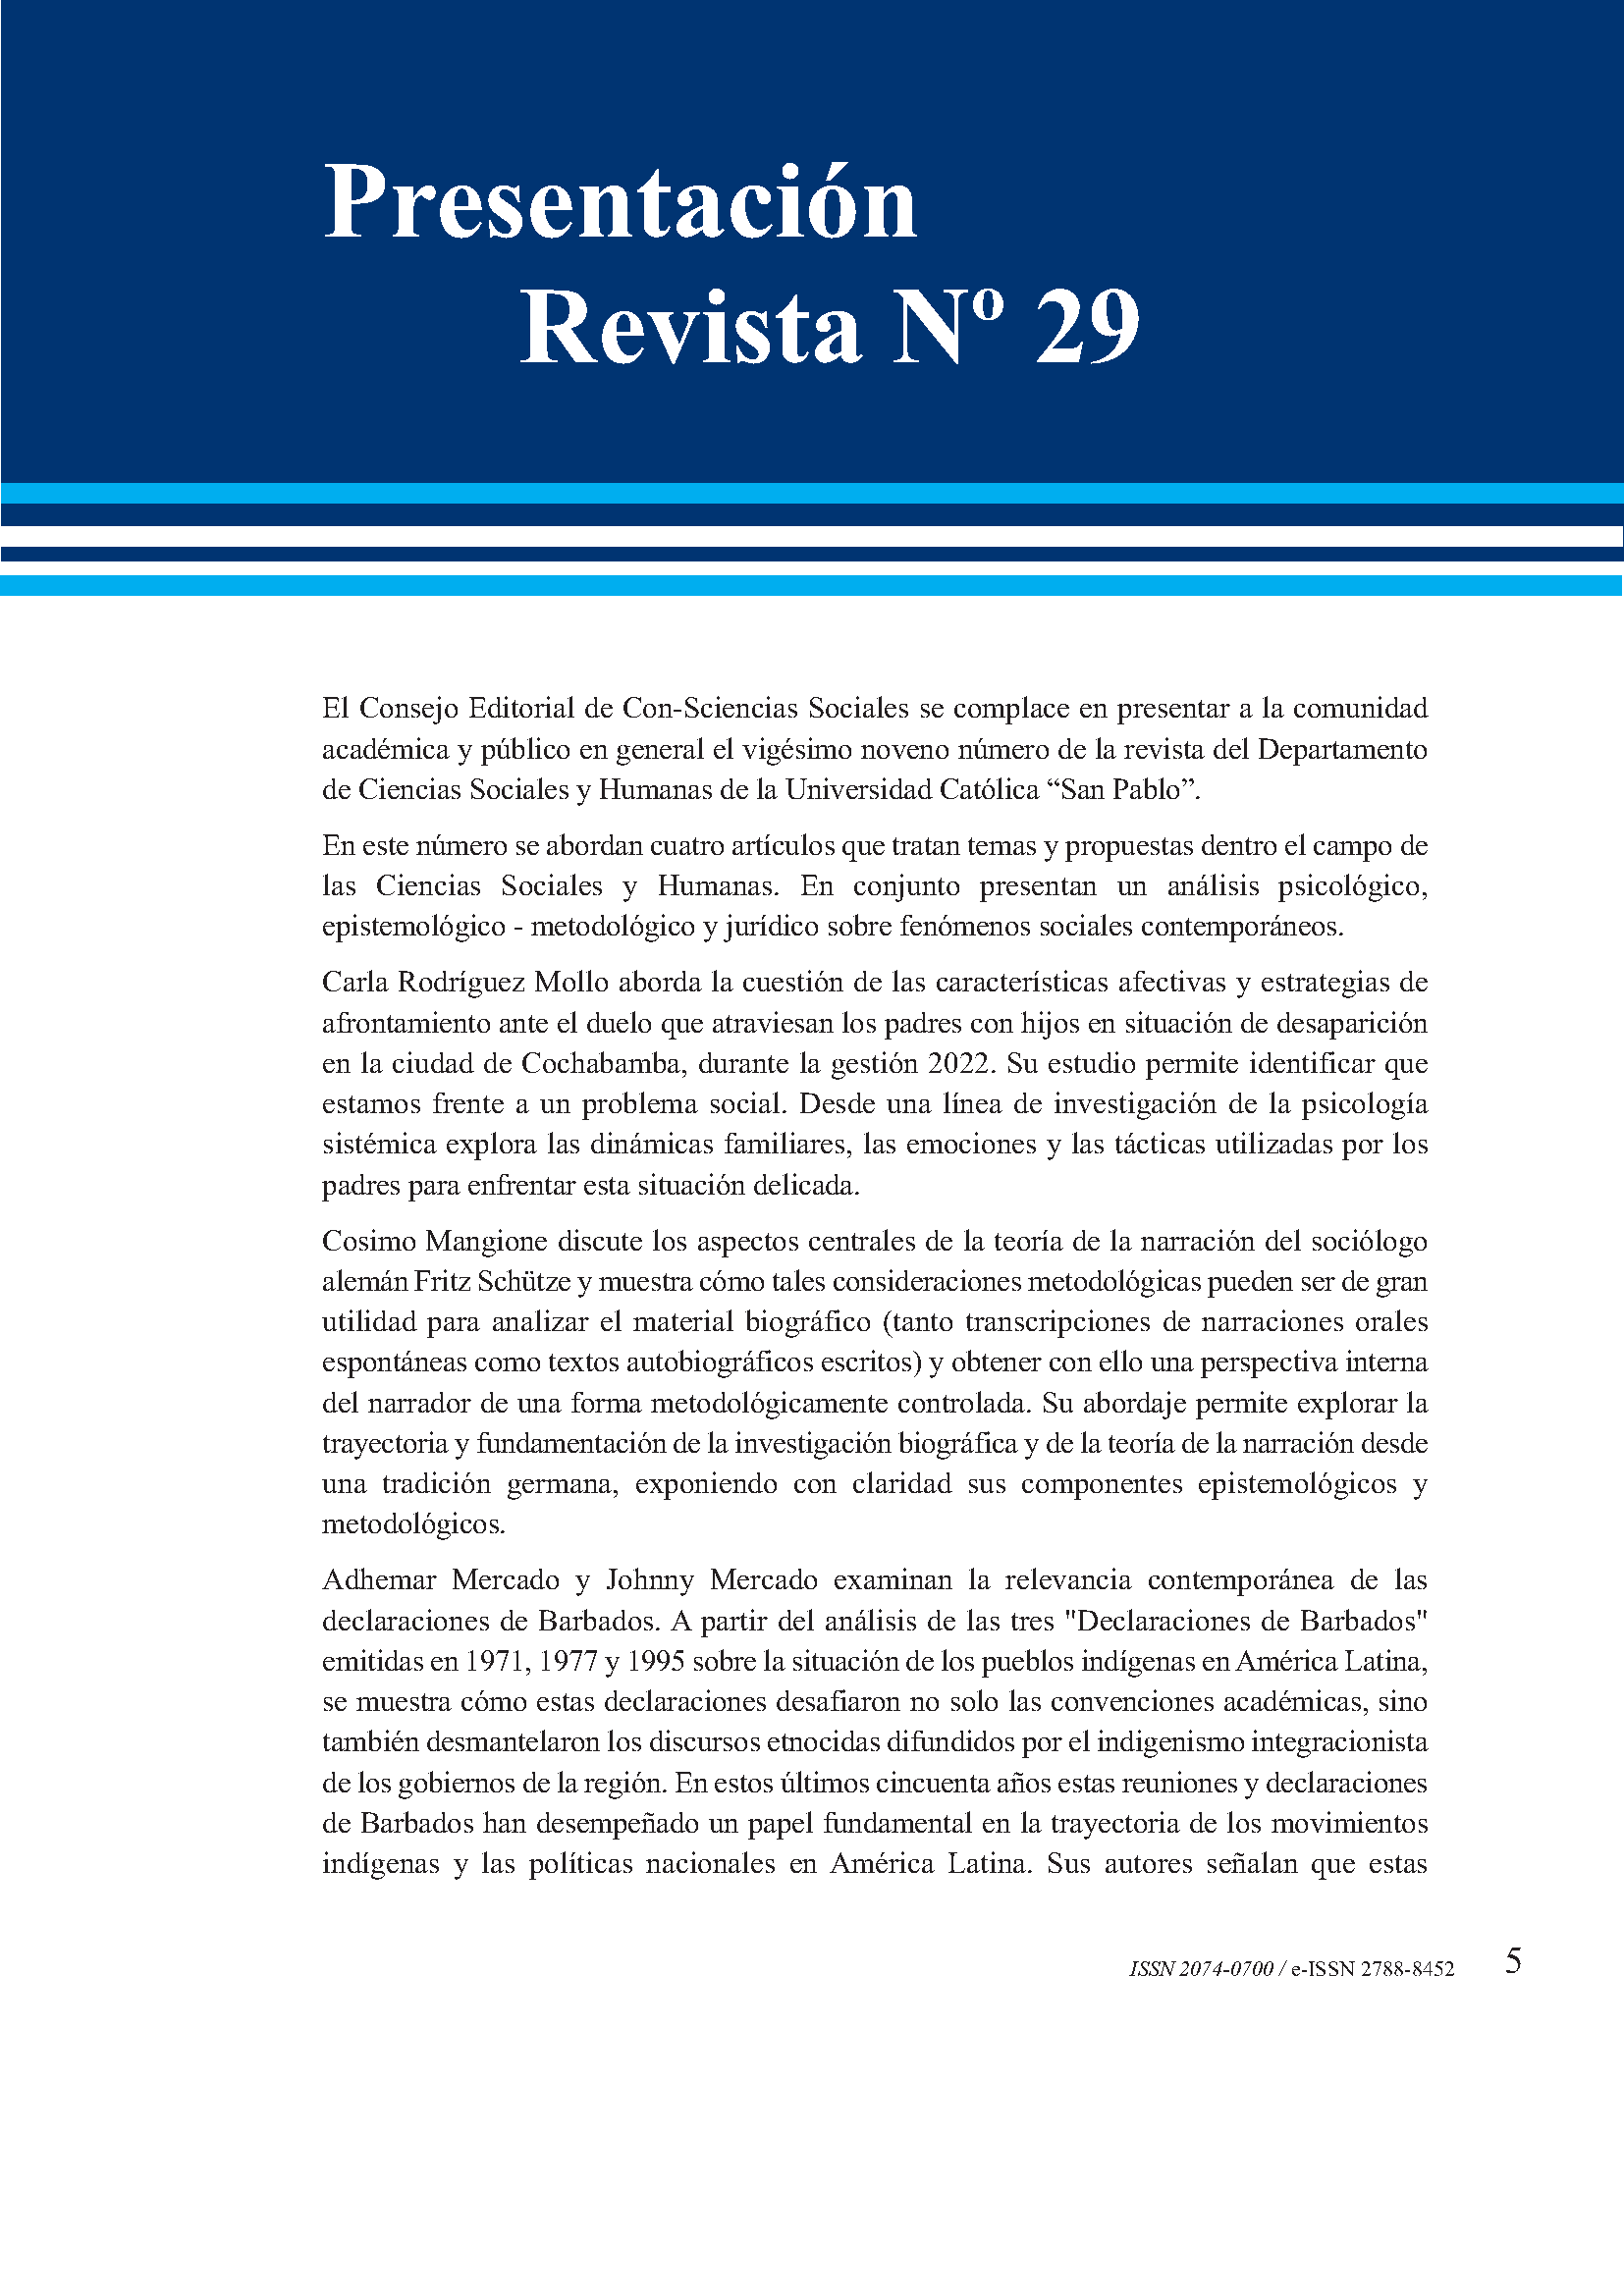 Presentación revista Con-Sciencias Sociales N. 29